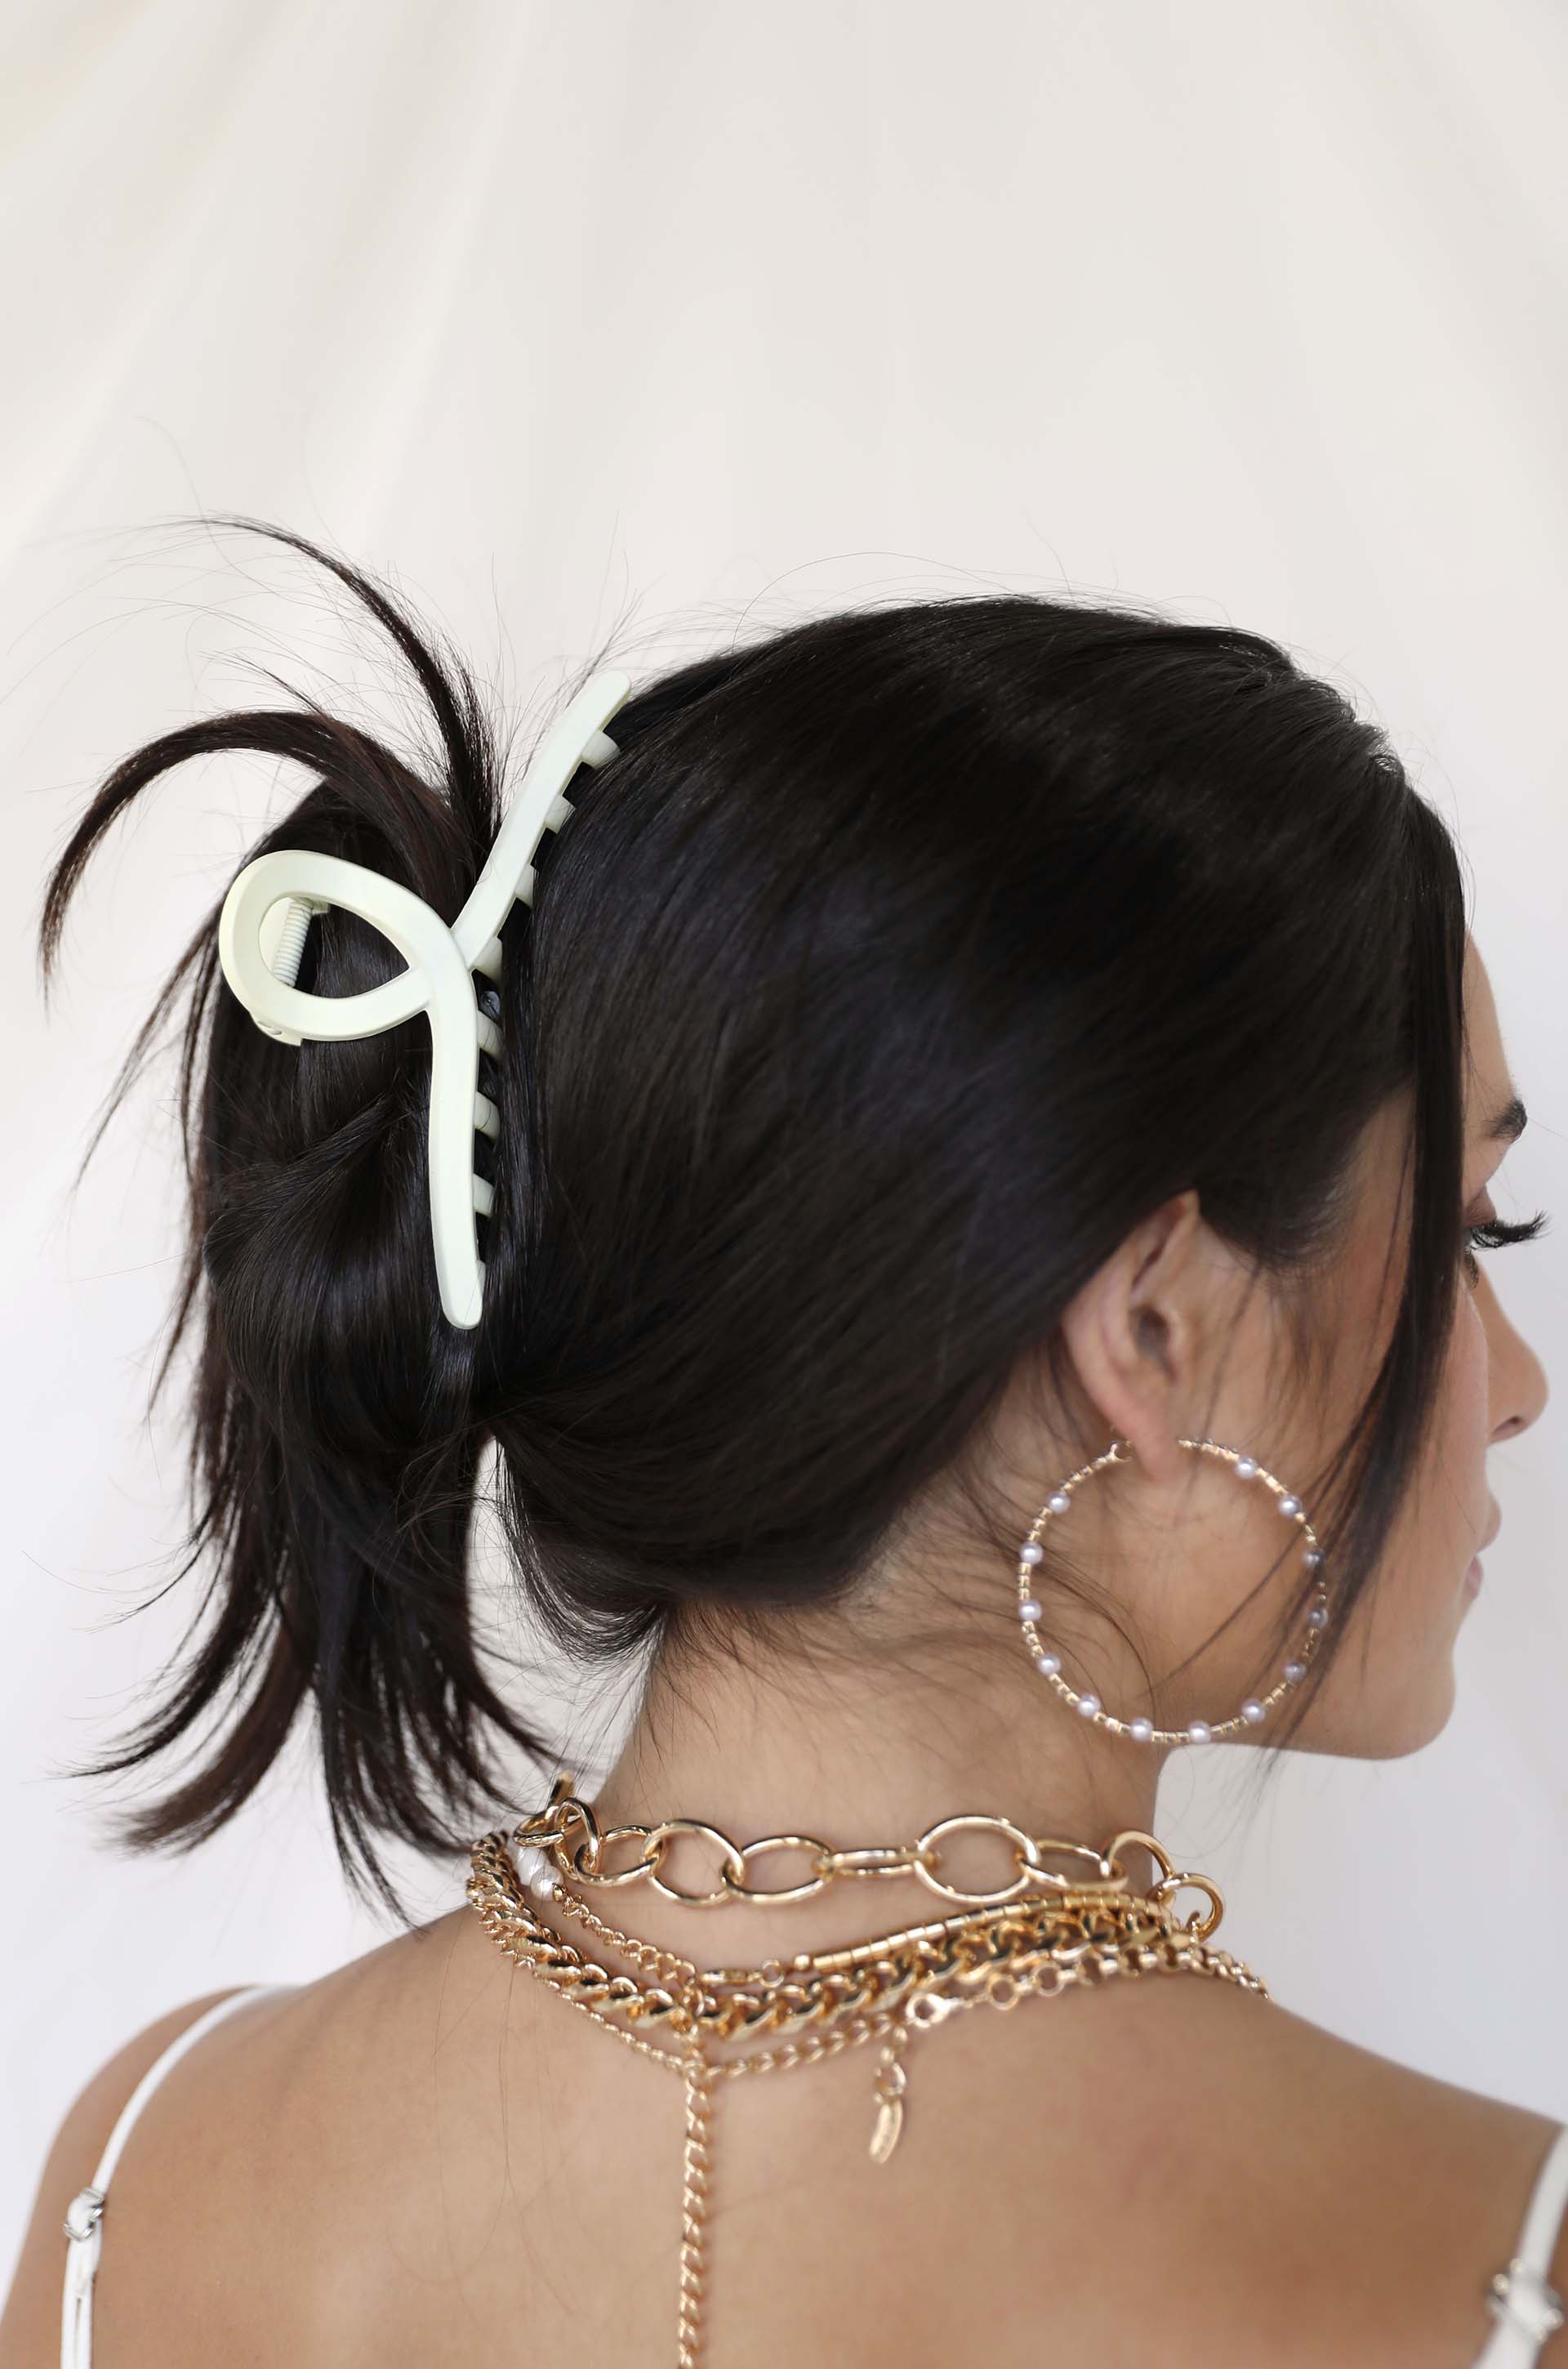 A Mermaid's Pearl and Crystal Dotted Hoop Earrings on model